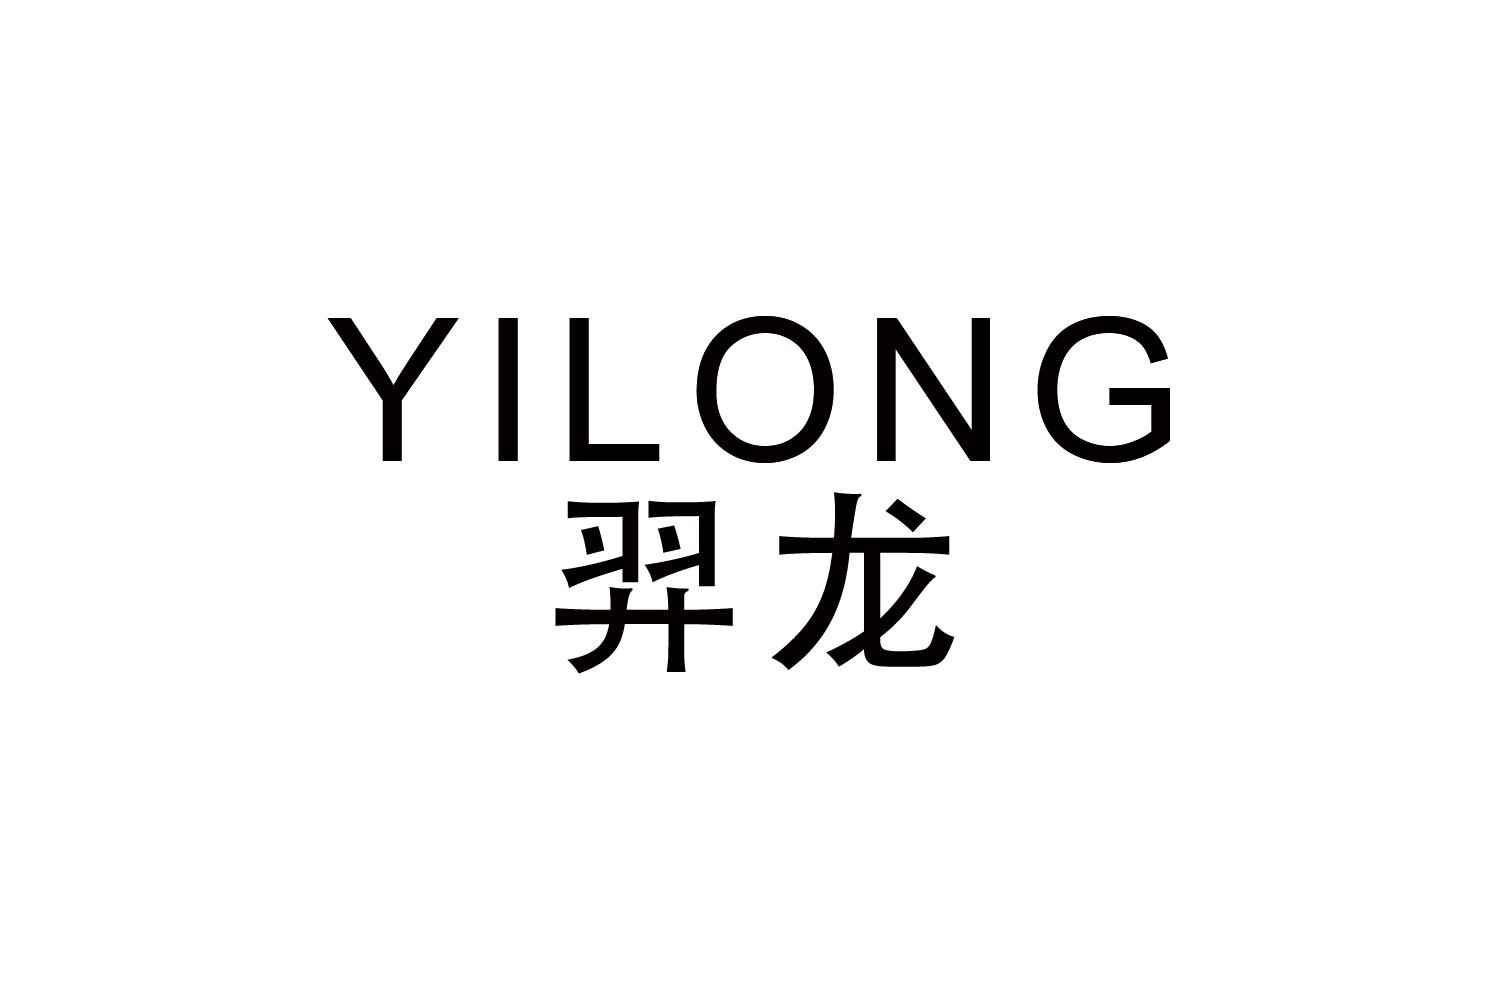 YILONG
羿龙